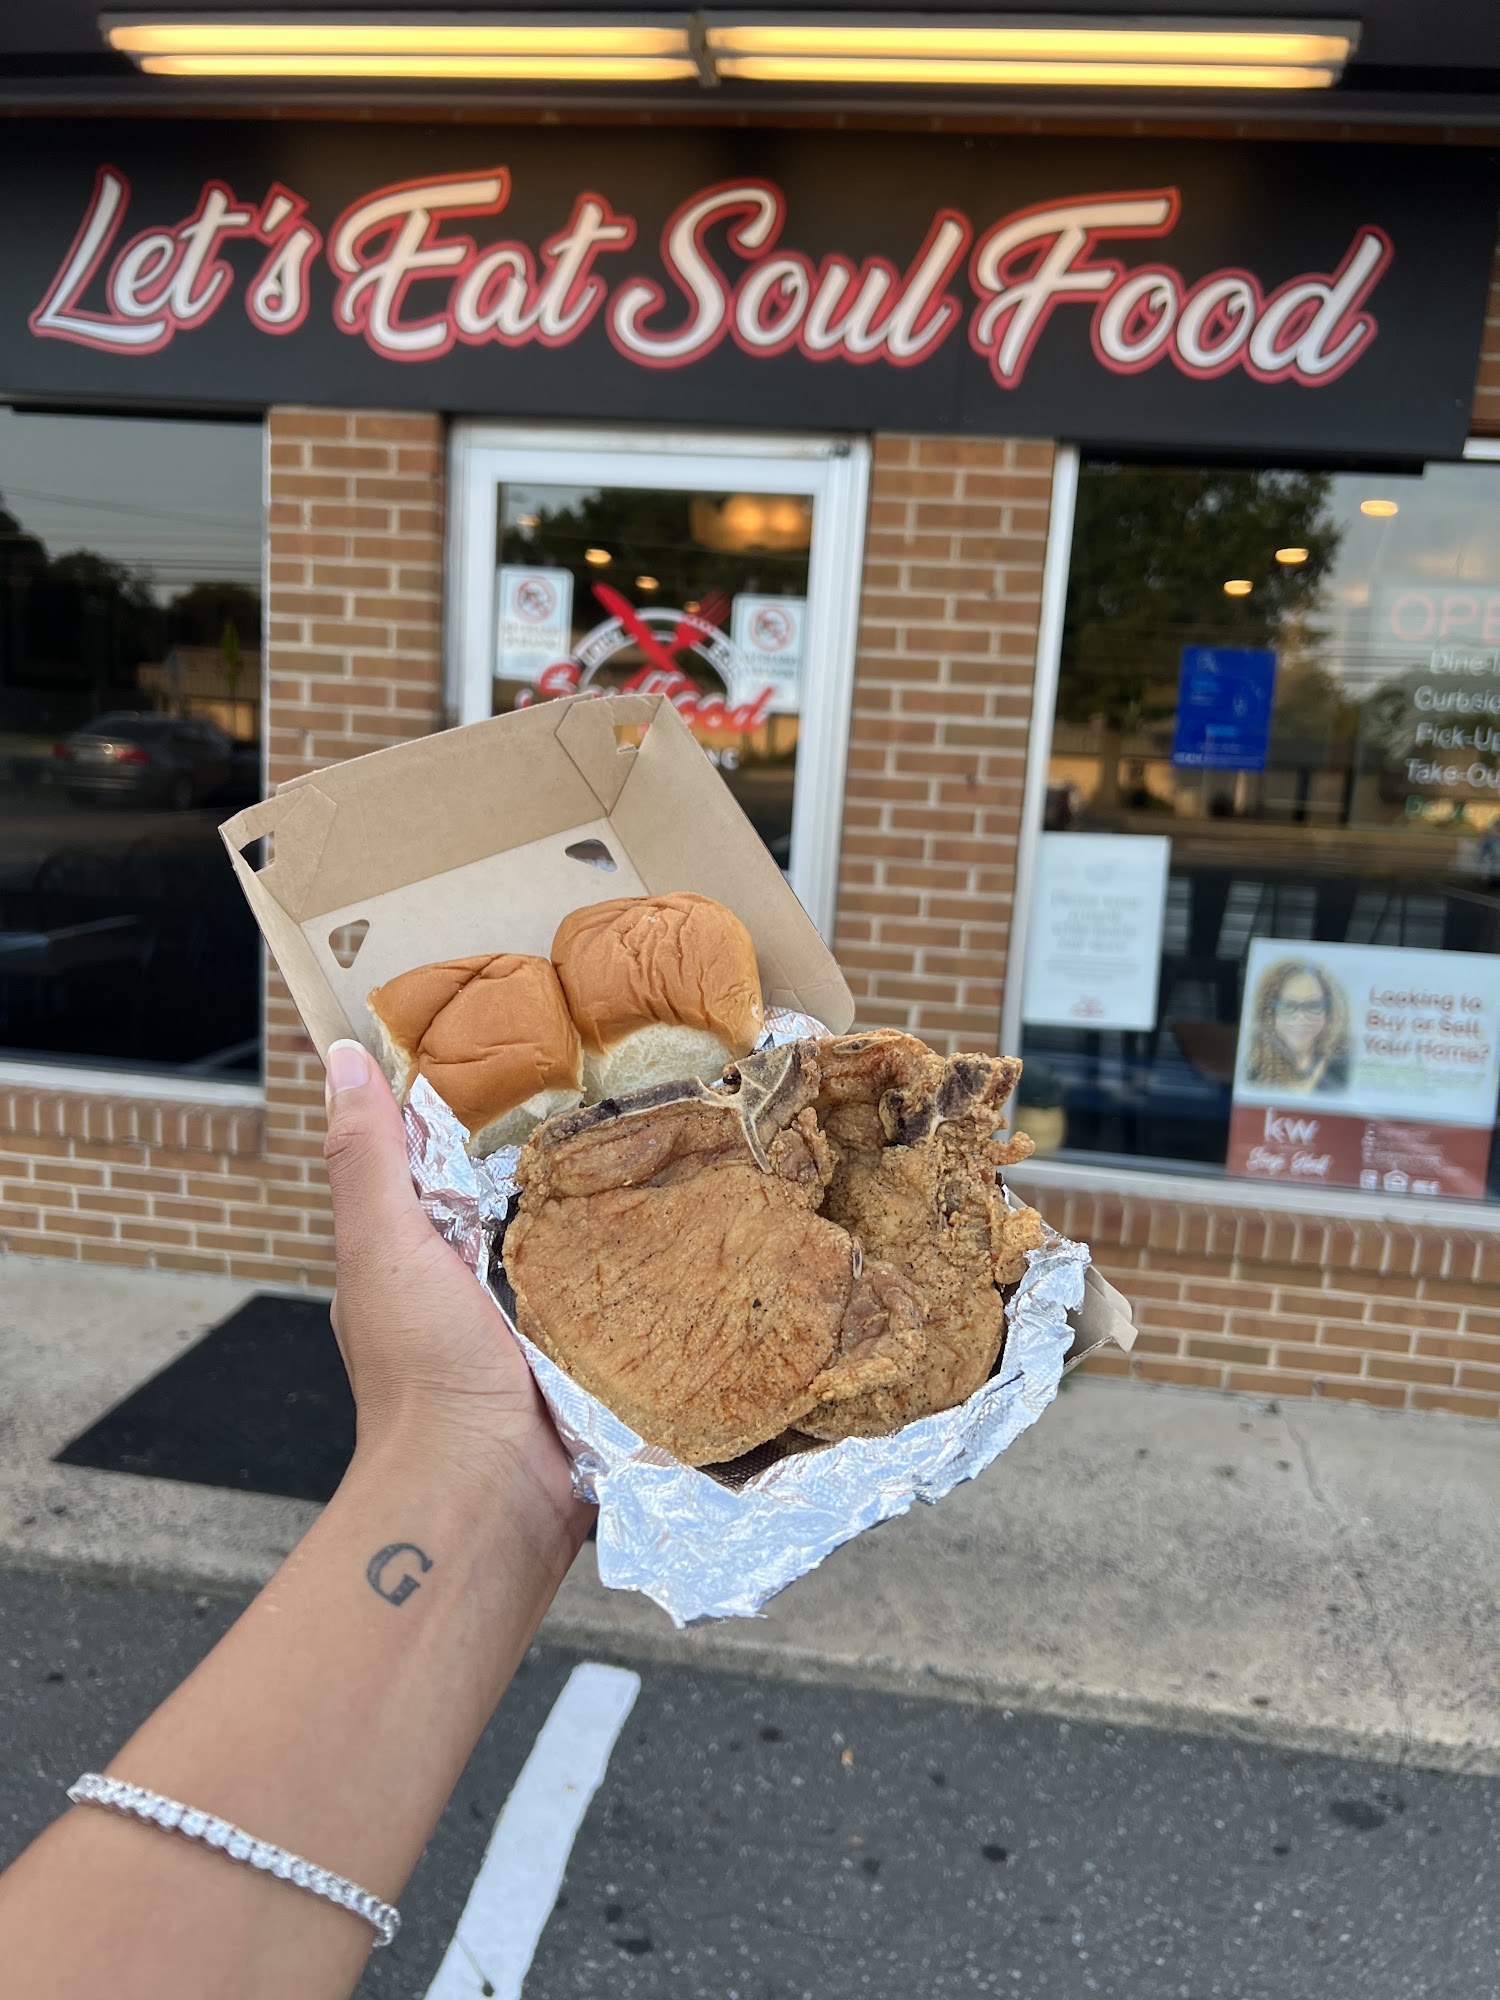 Let's Eat Soul Food